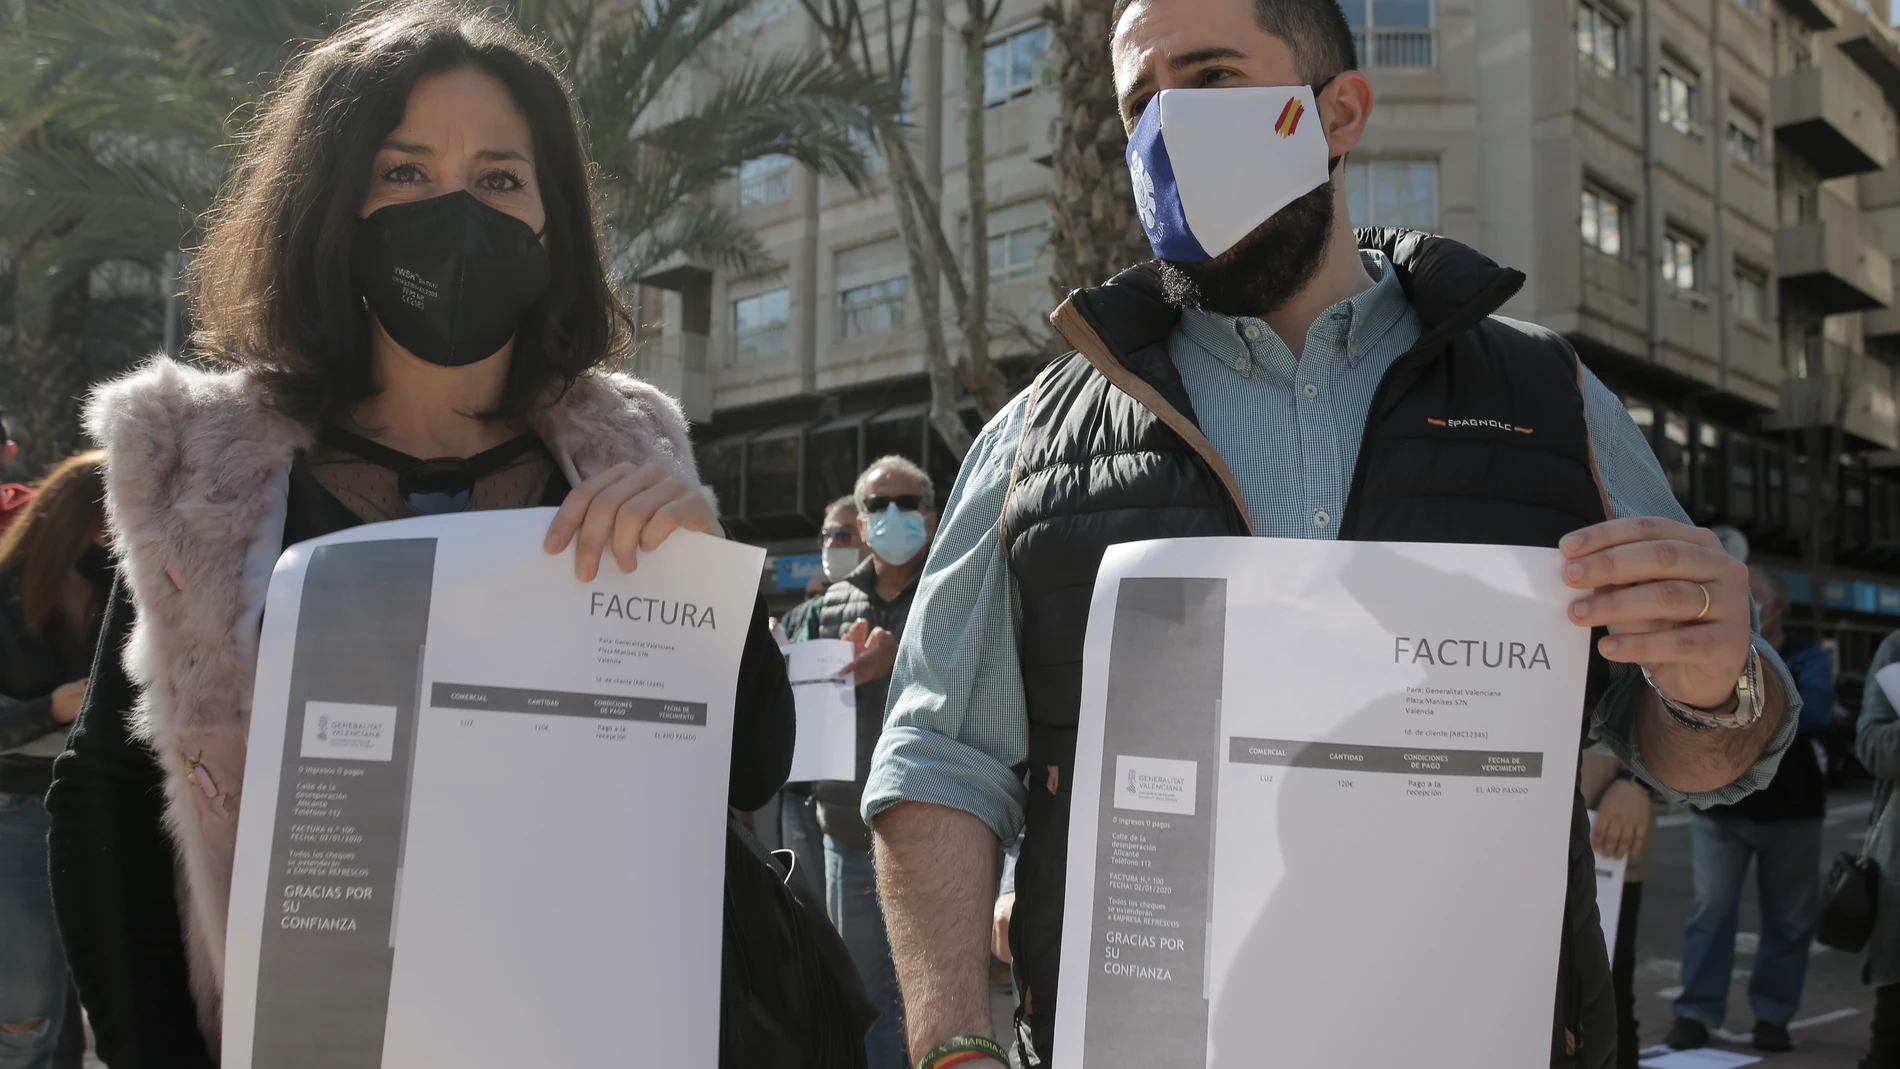 Hosteleros protestan en Alicante